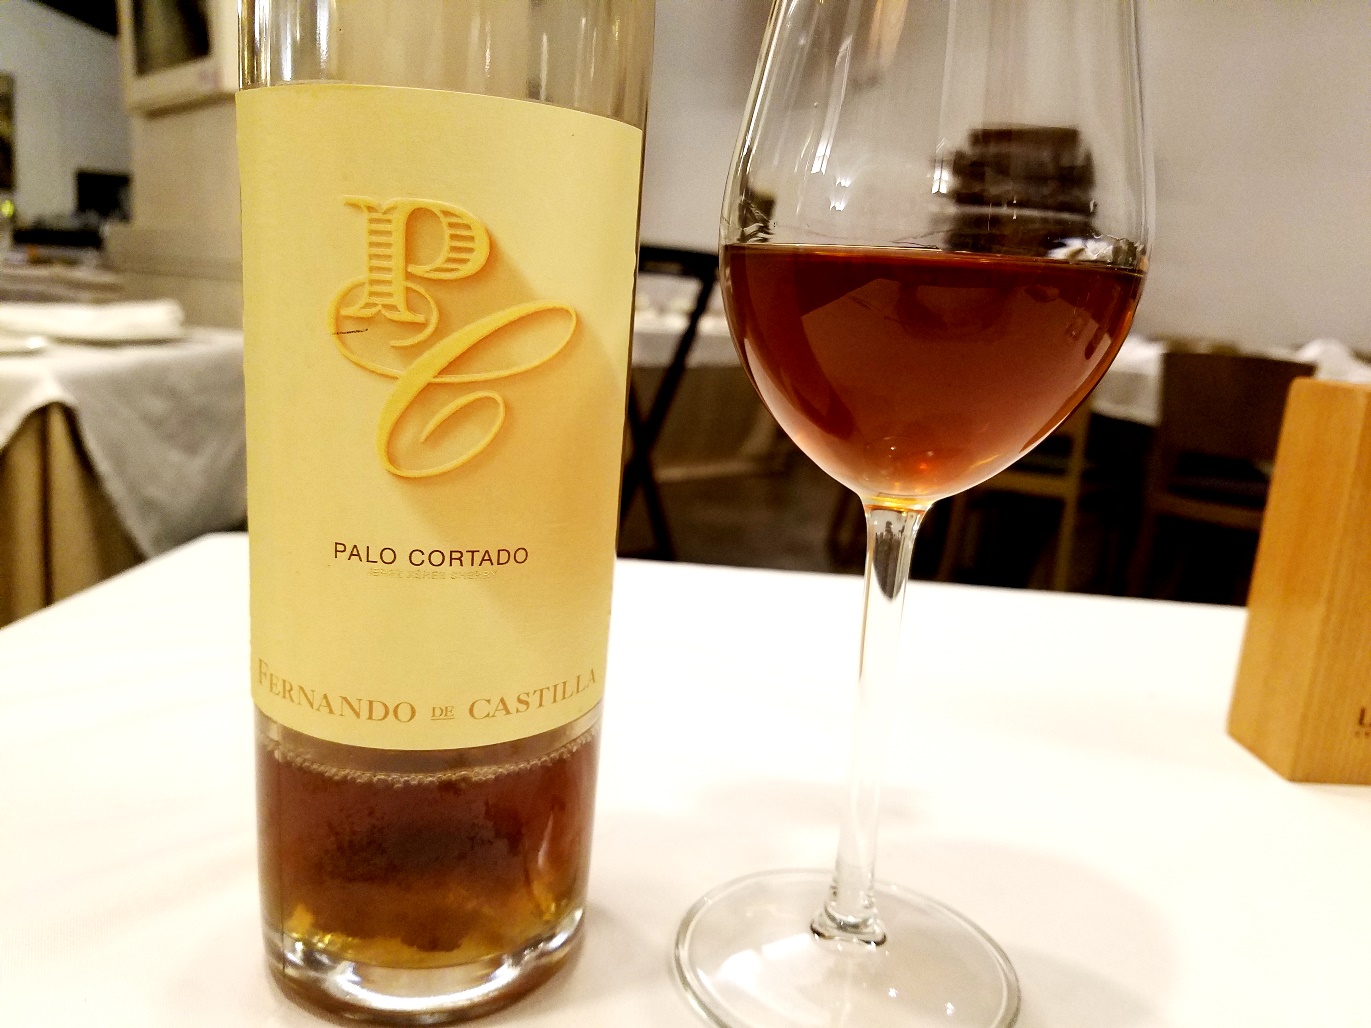 Fernando de Castilla, Antique Palo Cortado Sherry, Andalucía, Spain, Wine Casual